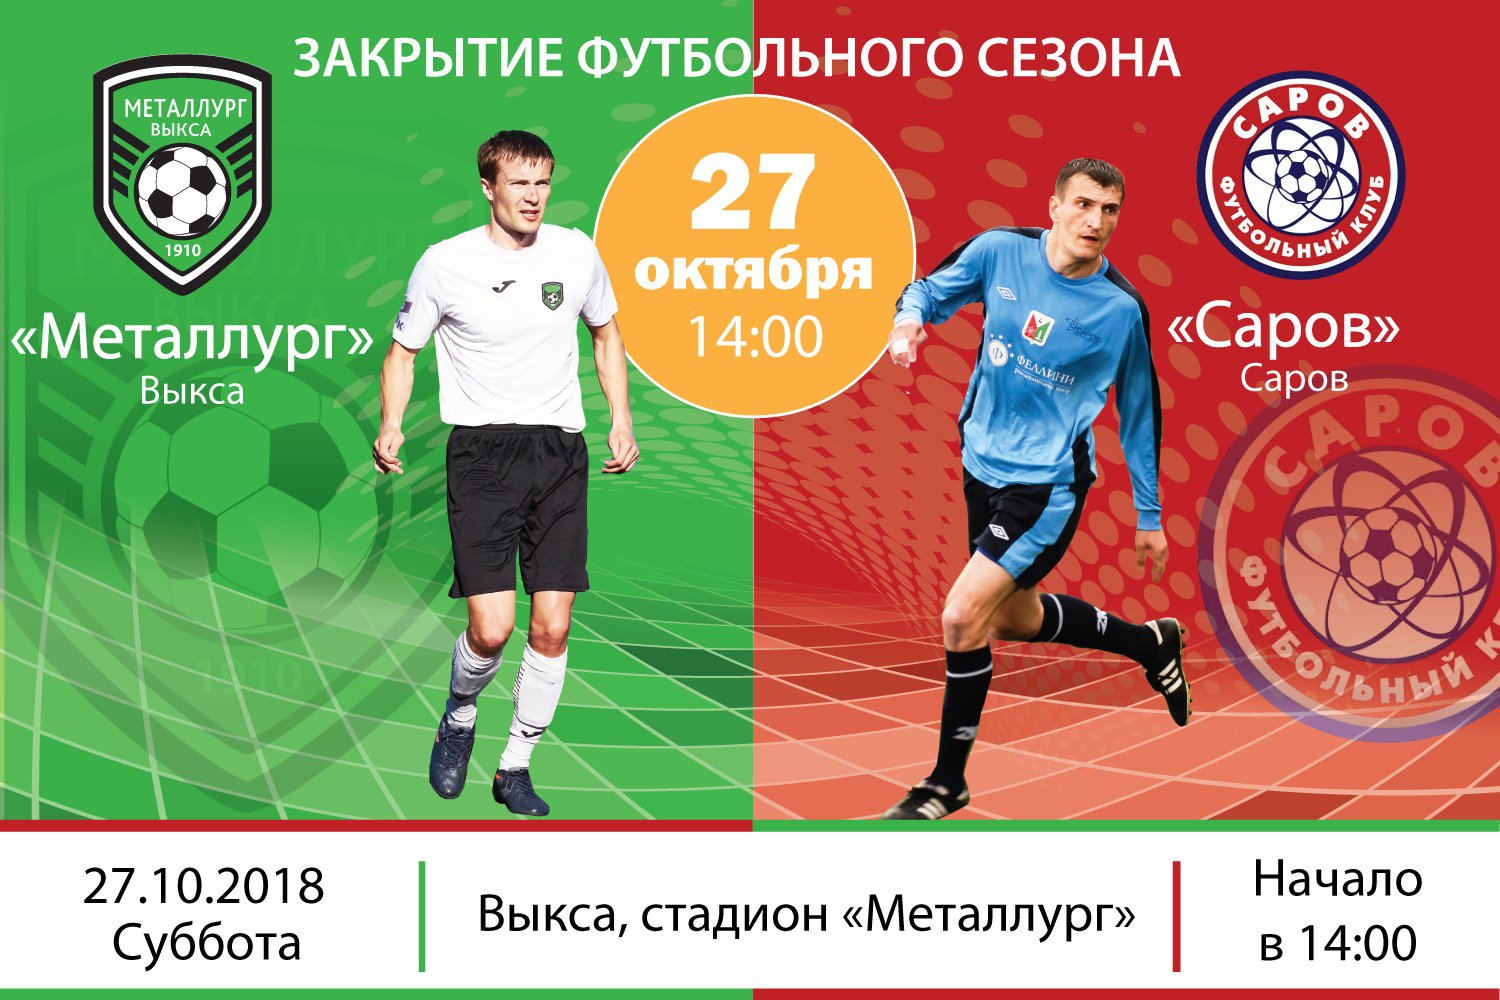 Закрытие футбольного сезона: «Металлург» Выкса — «Саров»